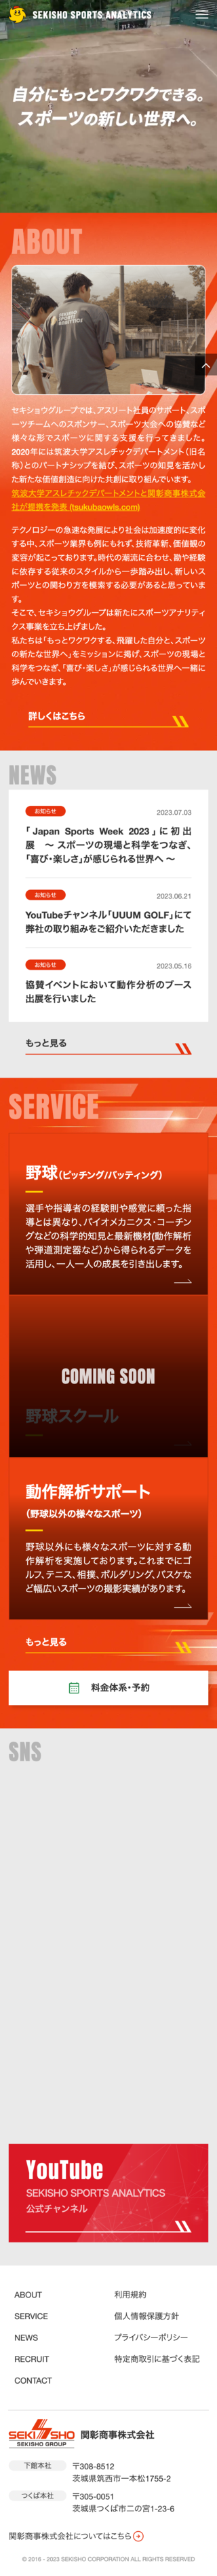 SEKISHO SPORTS ANALYTICSのスマートフォン画面